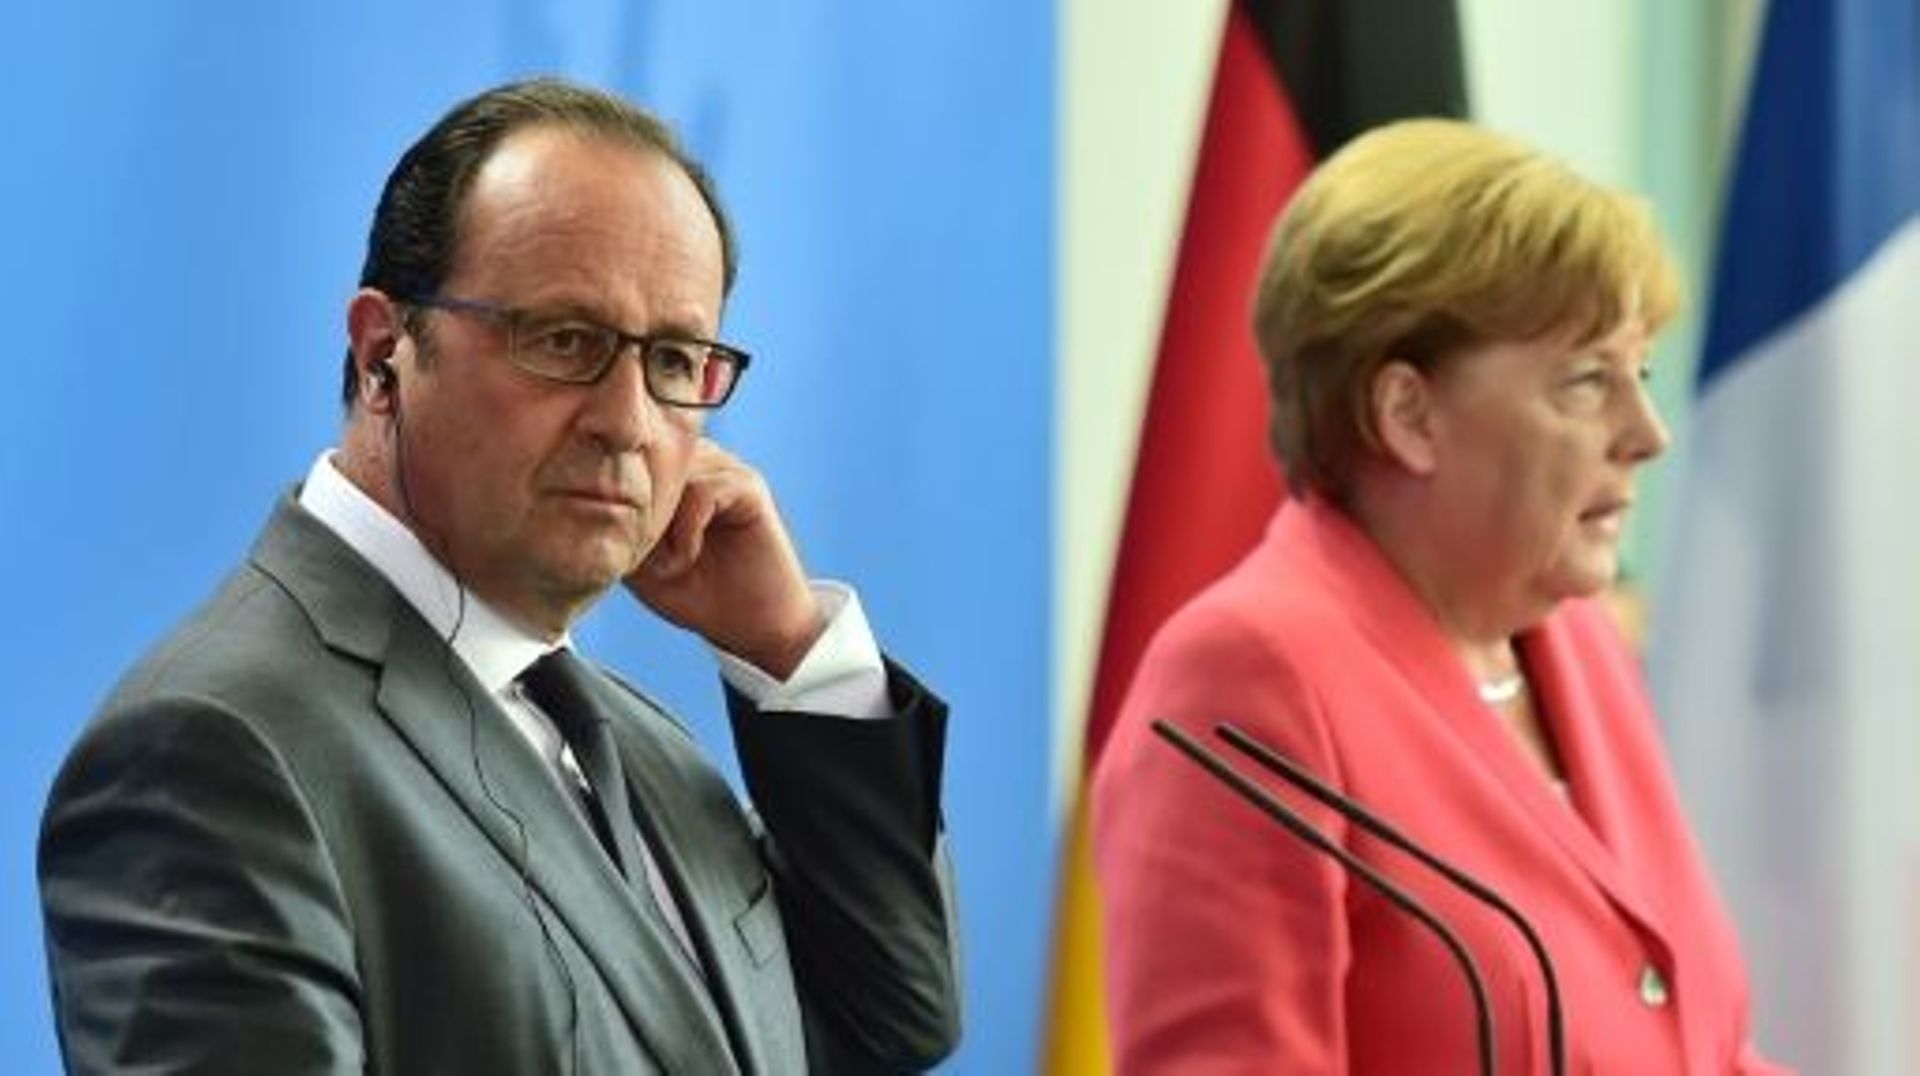 Le président François Hollande et la chancelière Angela Merkel lors d'une conférence de presse le 24 août 2015 à Berlin